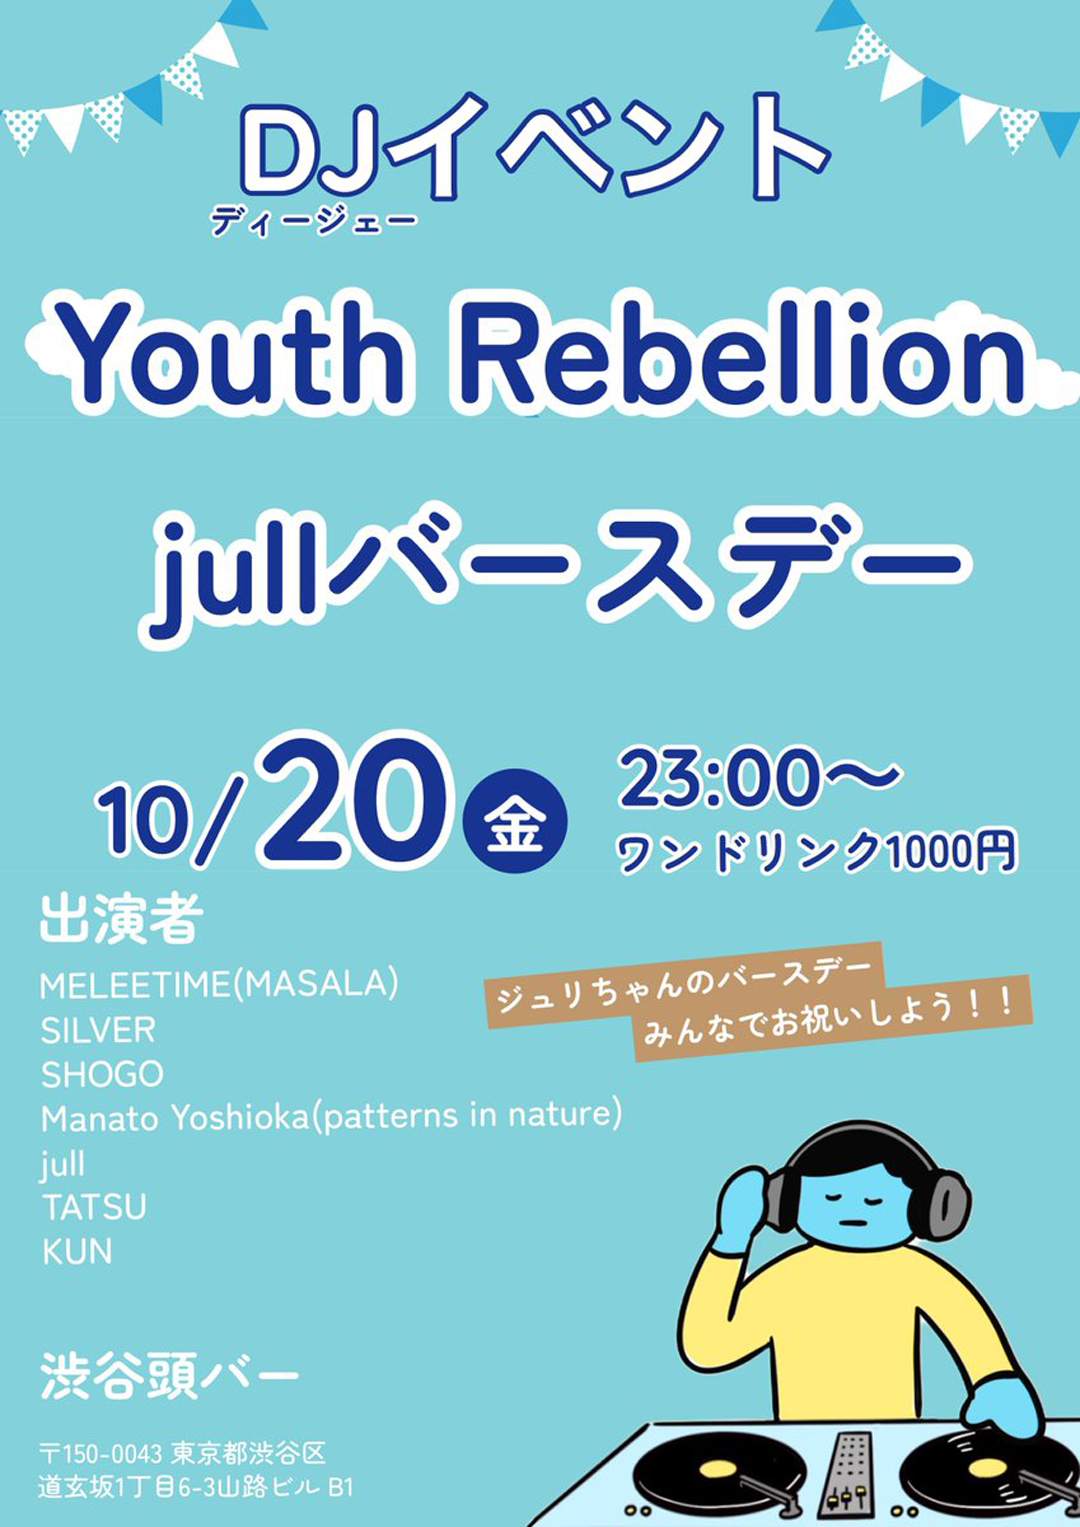 Youth Rebellion - フライヤー表